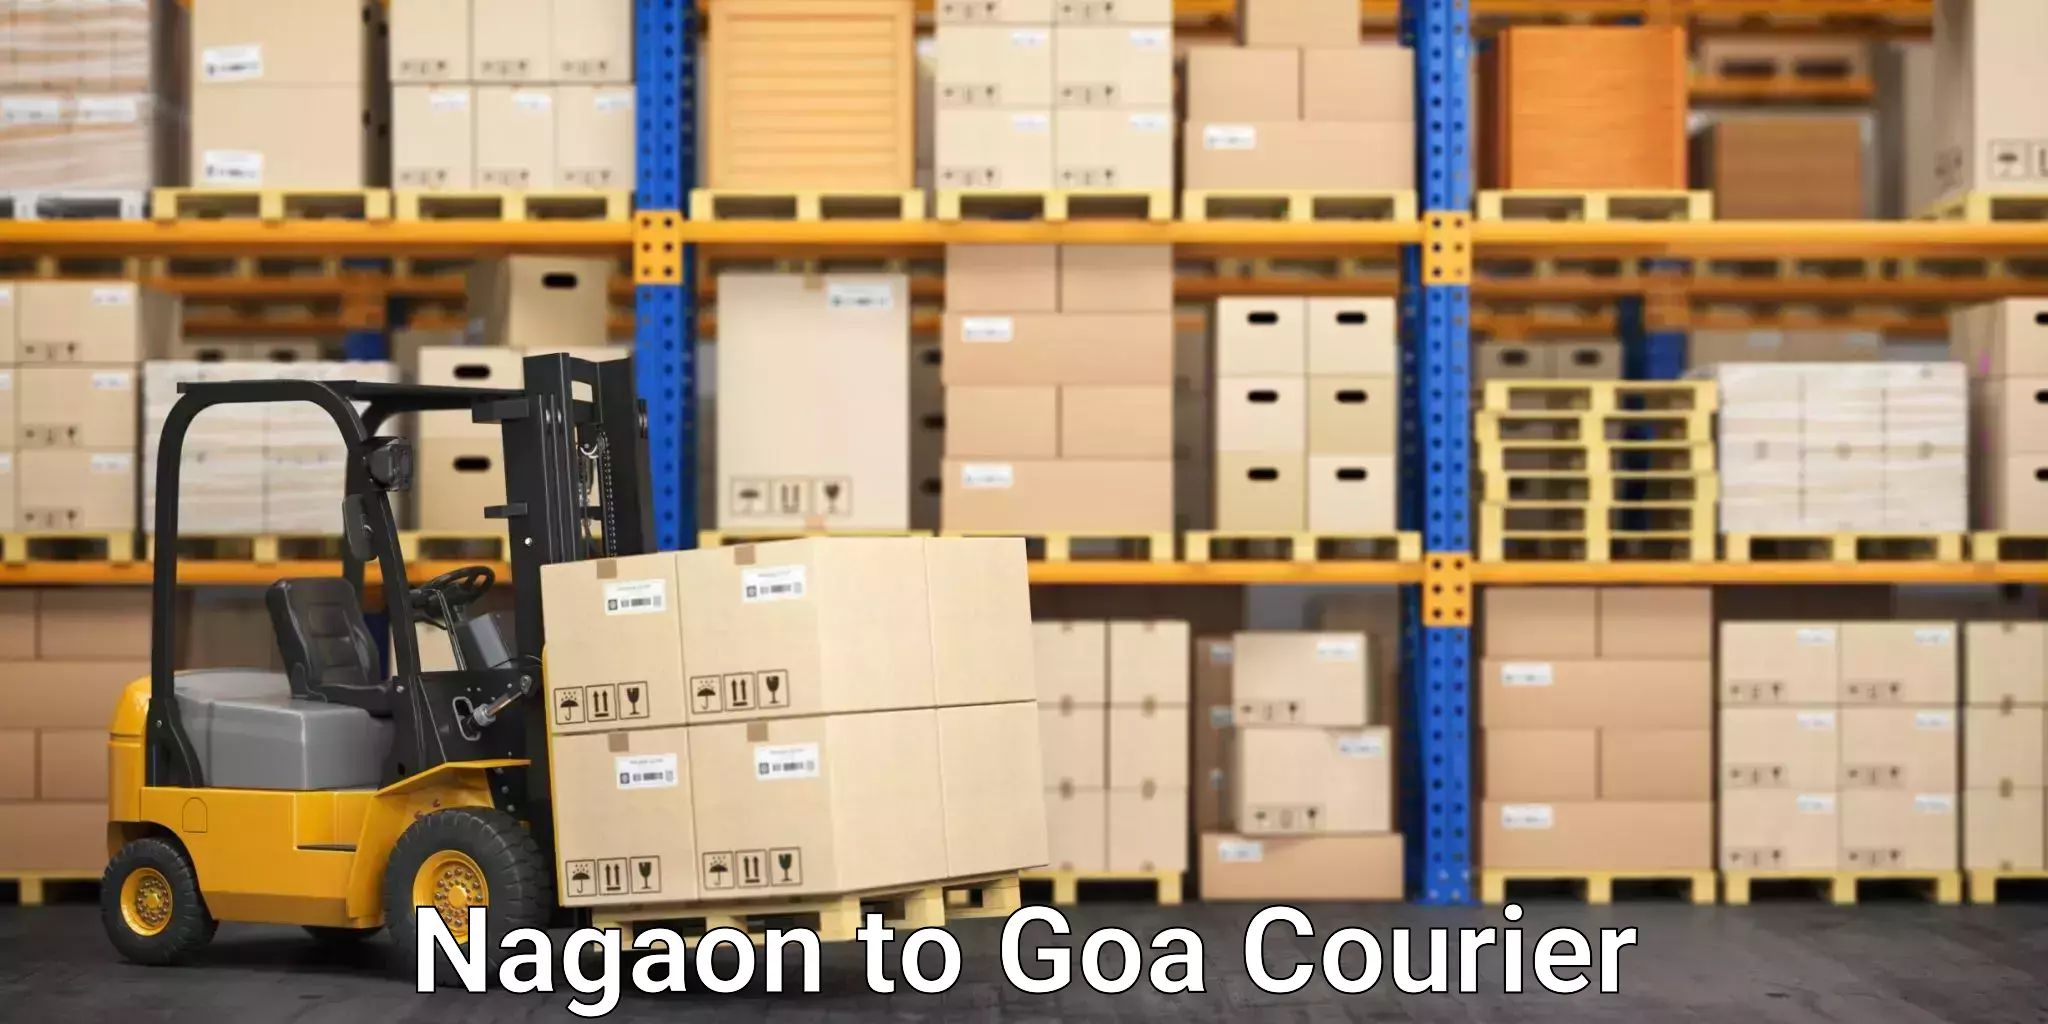 Urgent courier needs Nagaon to Goa University